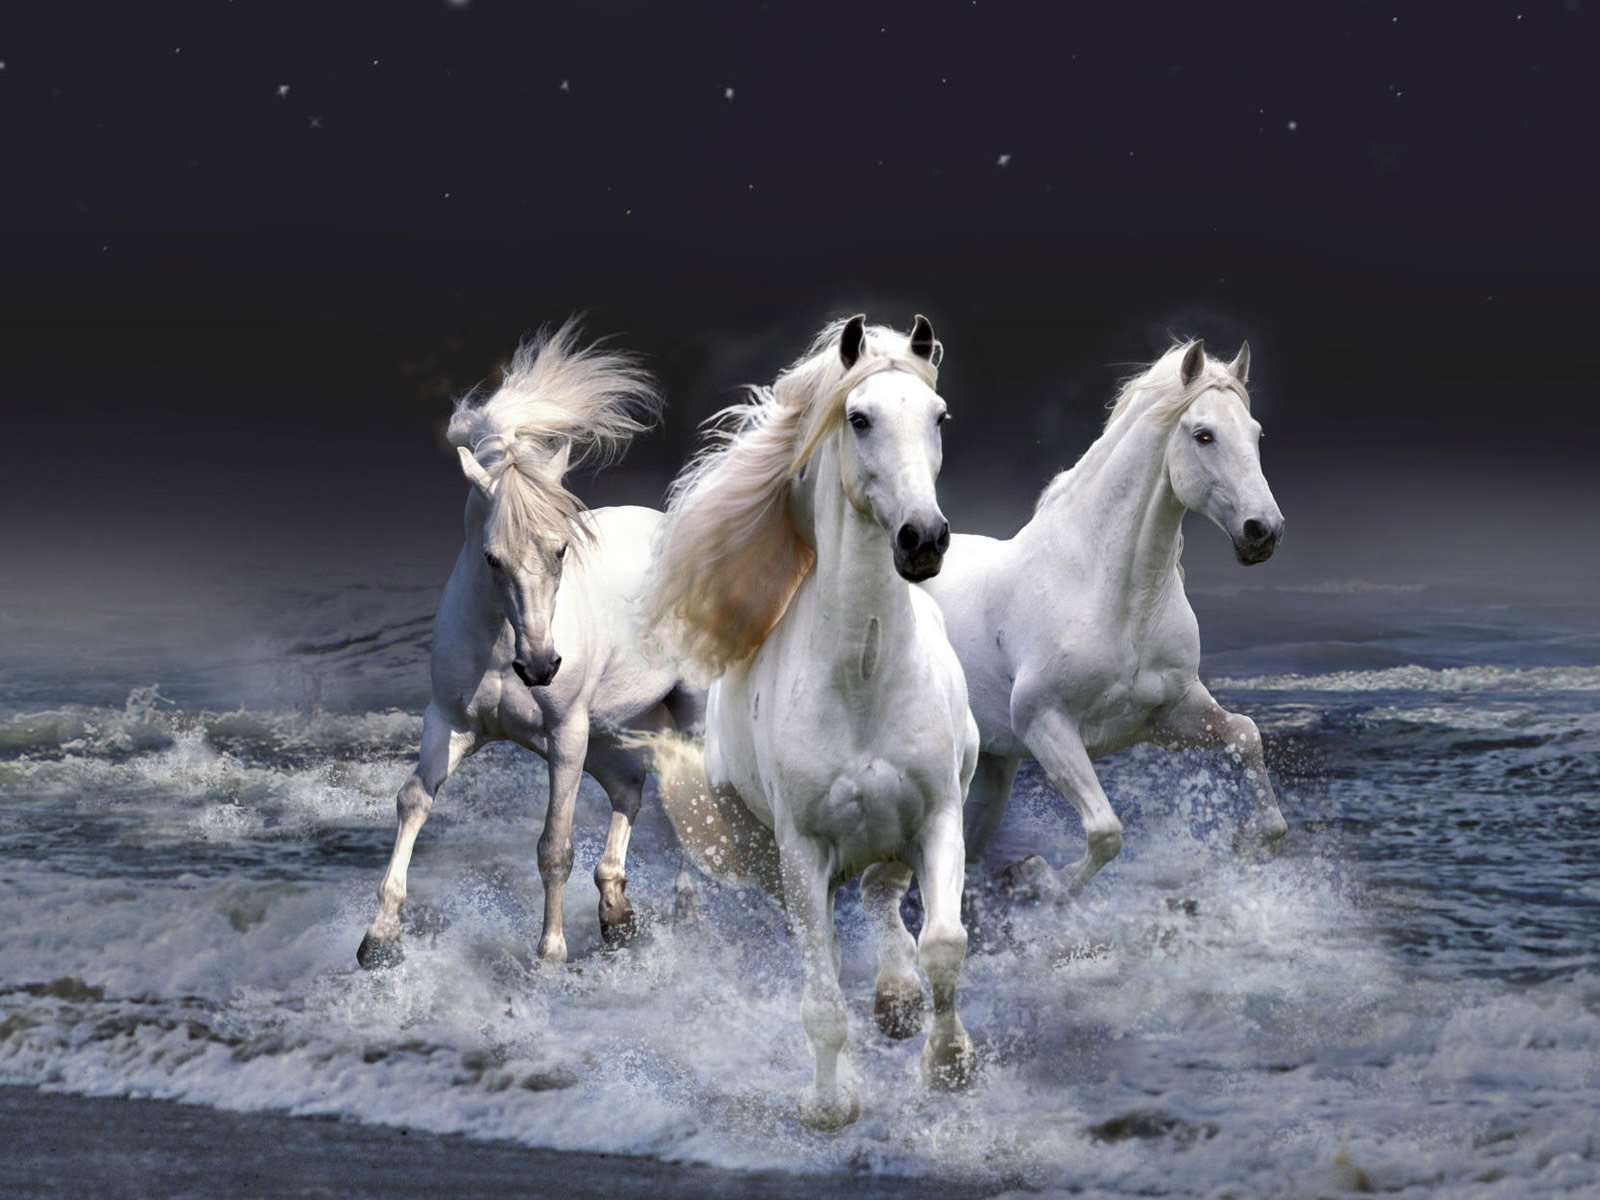  horse wallpaper fantasy horse wallpaper horse desktop wallpaper horse 1600x1200